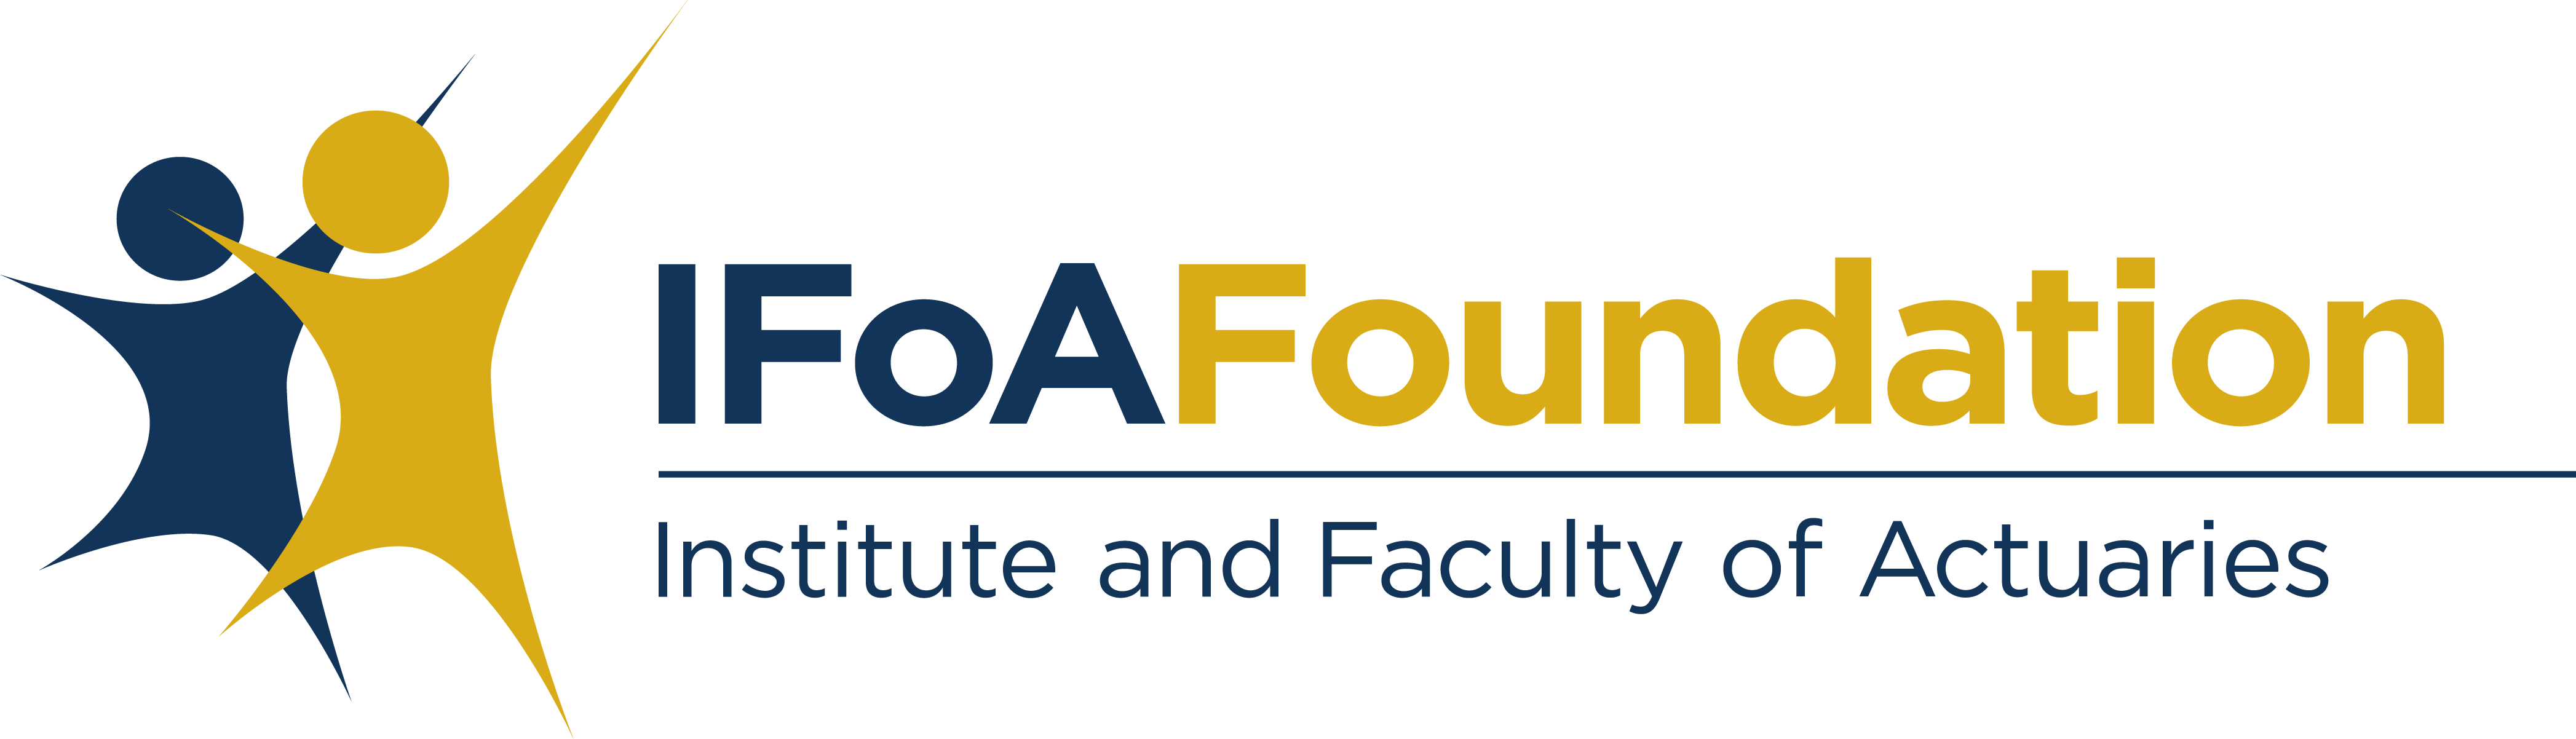 IFoA Foundation